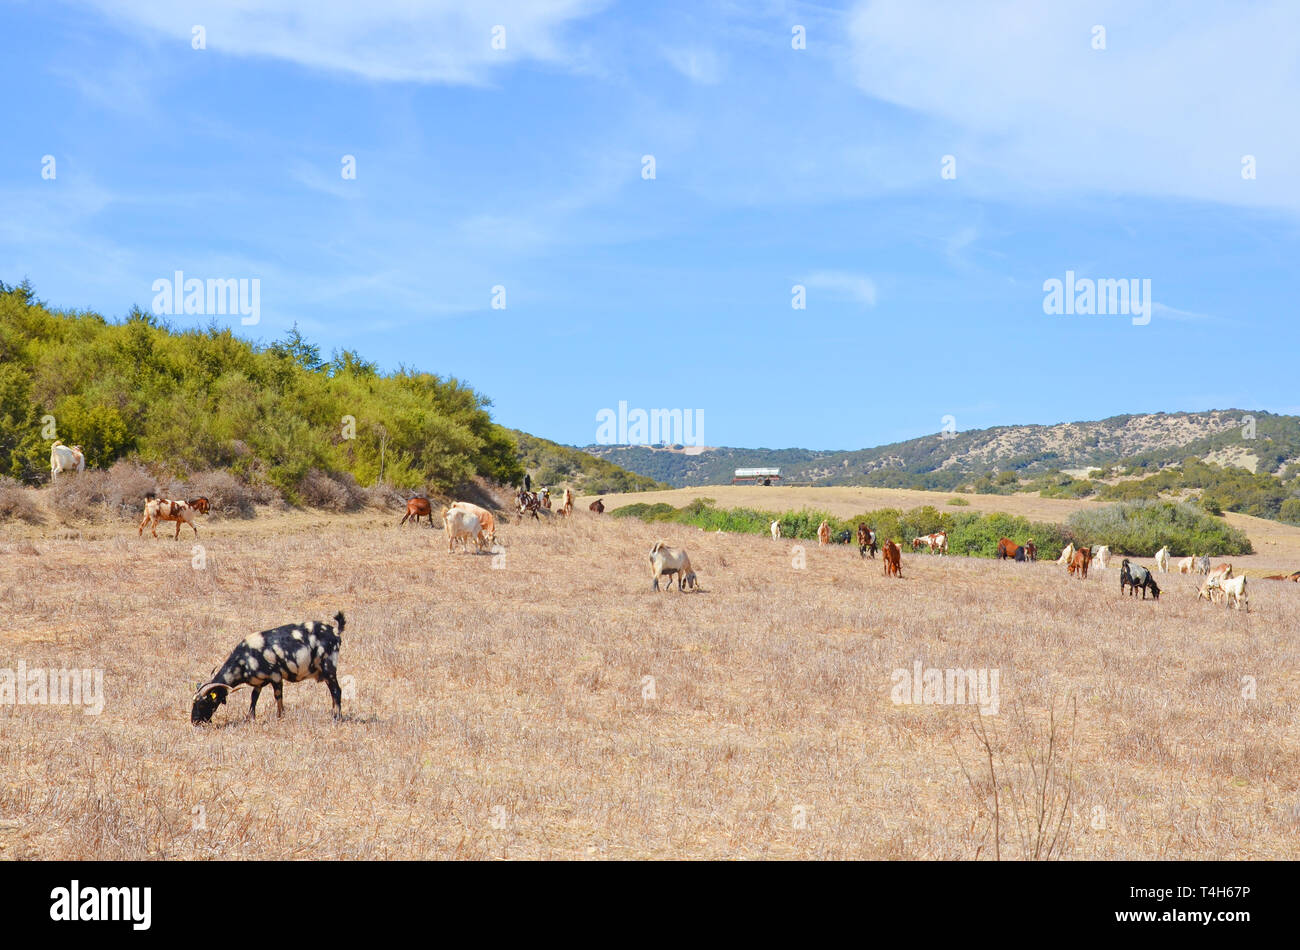 Allevamento di capre pascolano nella bellissima campagna cipriota penisola Karpas. Il luogo remoto appartiene alla zona settentrionale turca di Cipro. Foto Stock